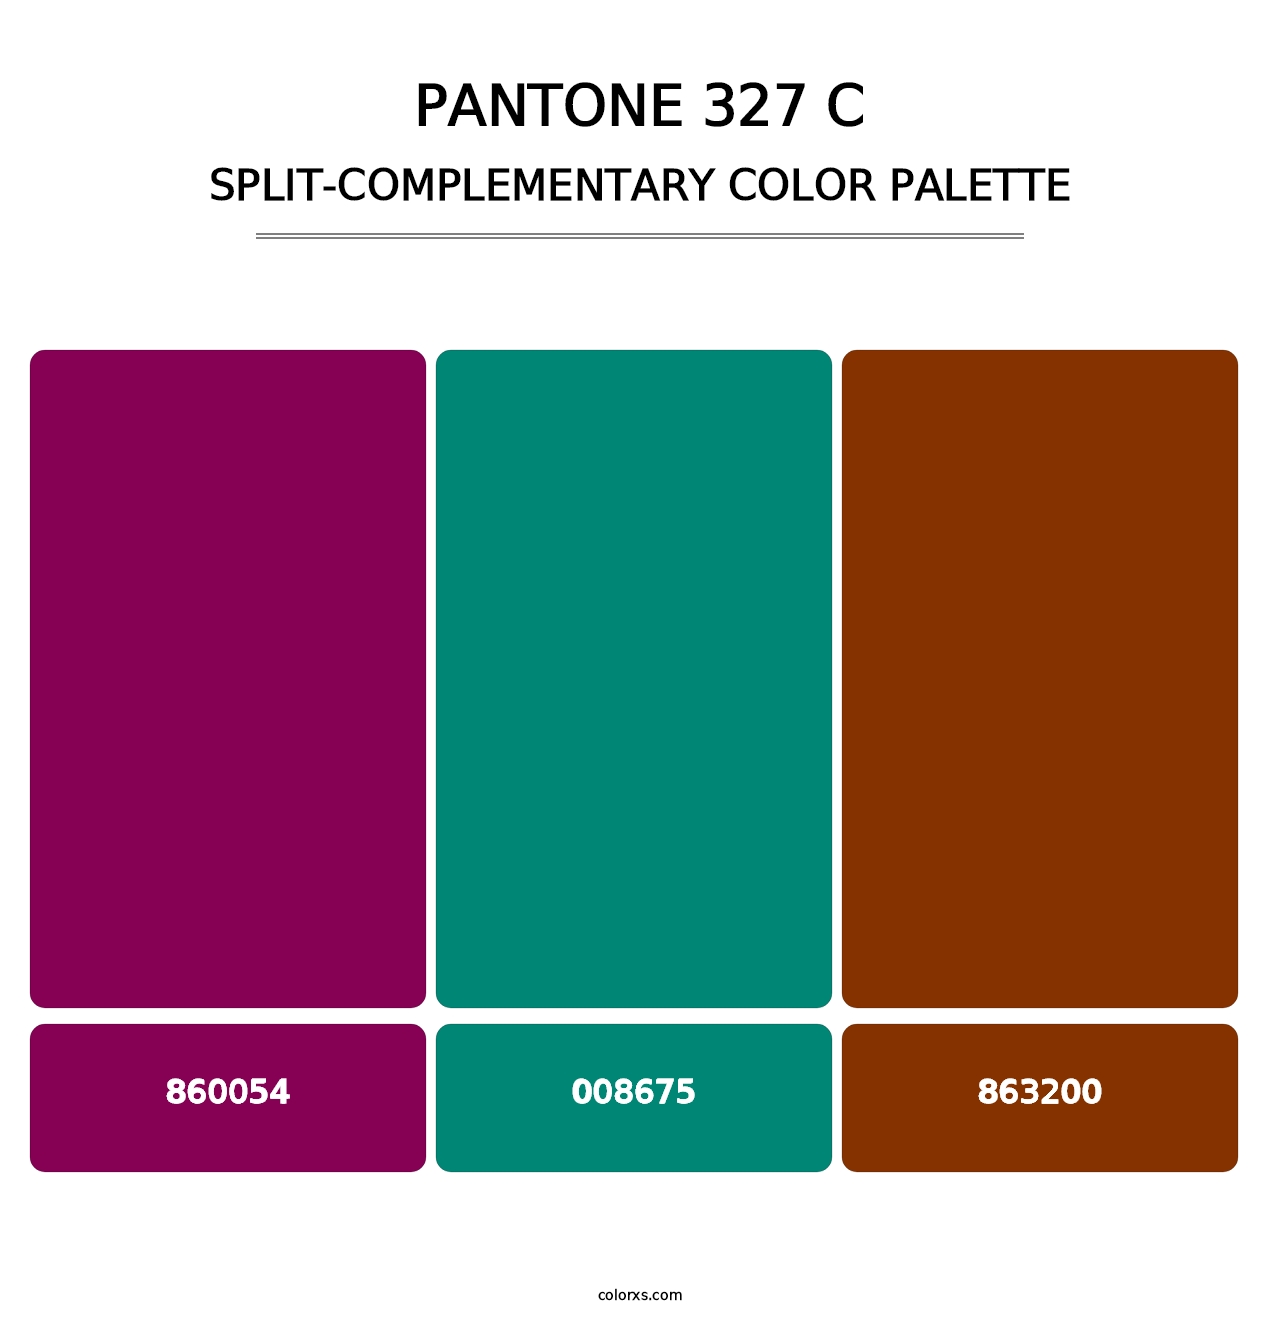 PANTONE 327 C - Split-Complementary Color Palette